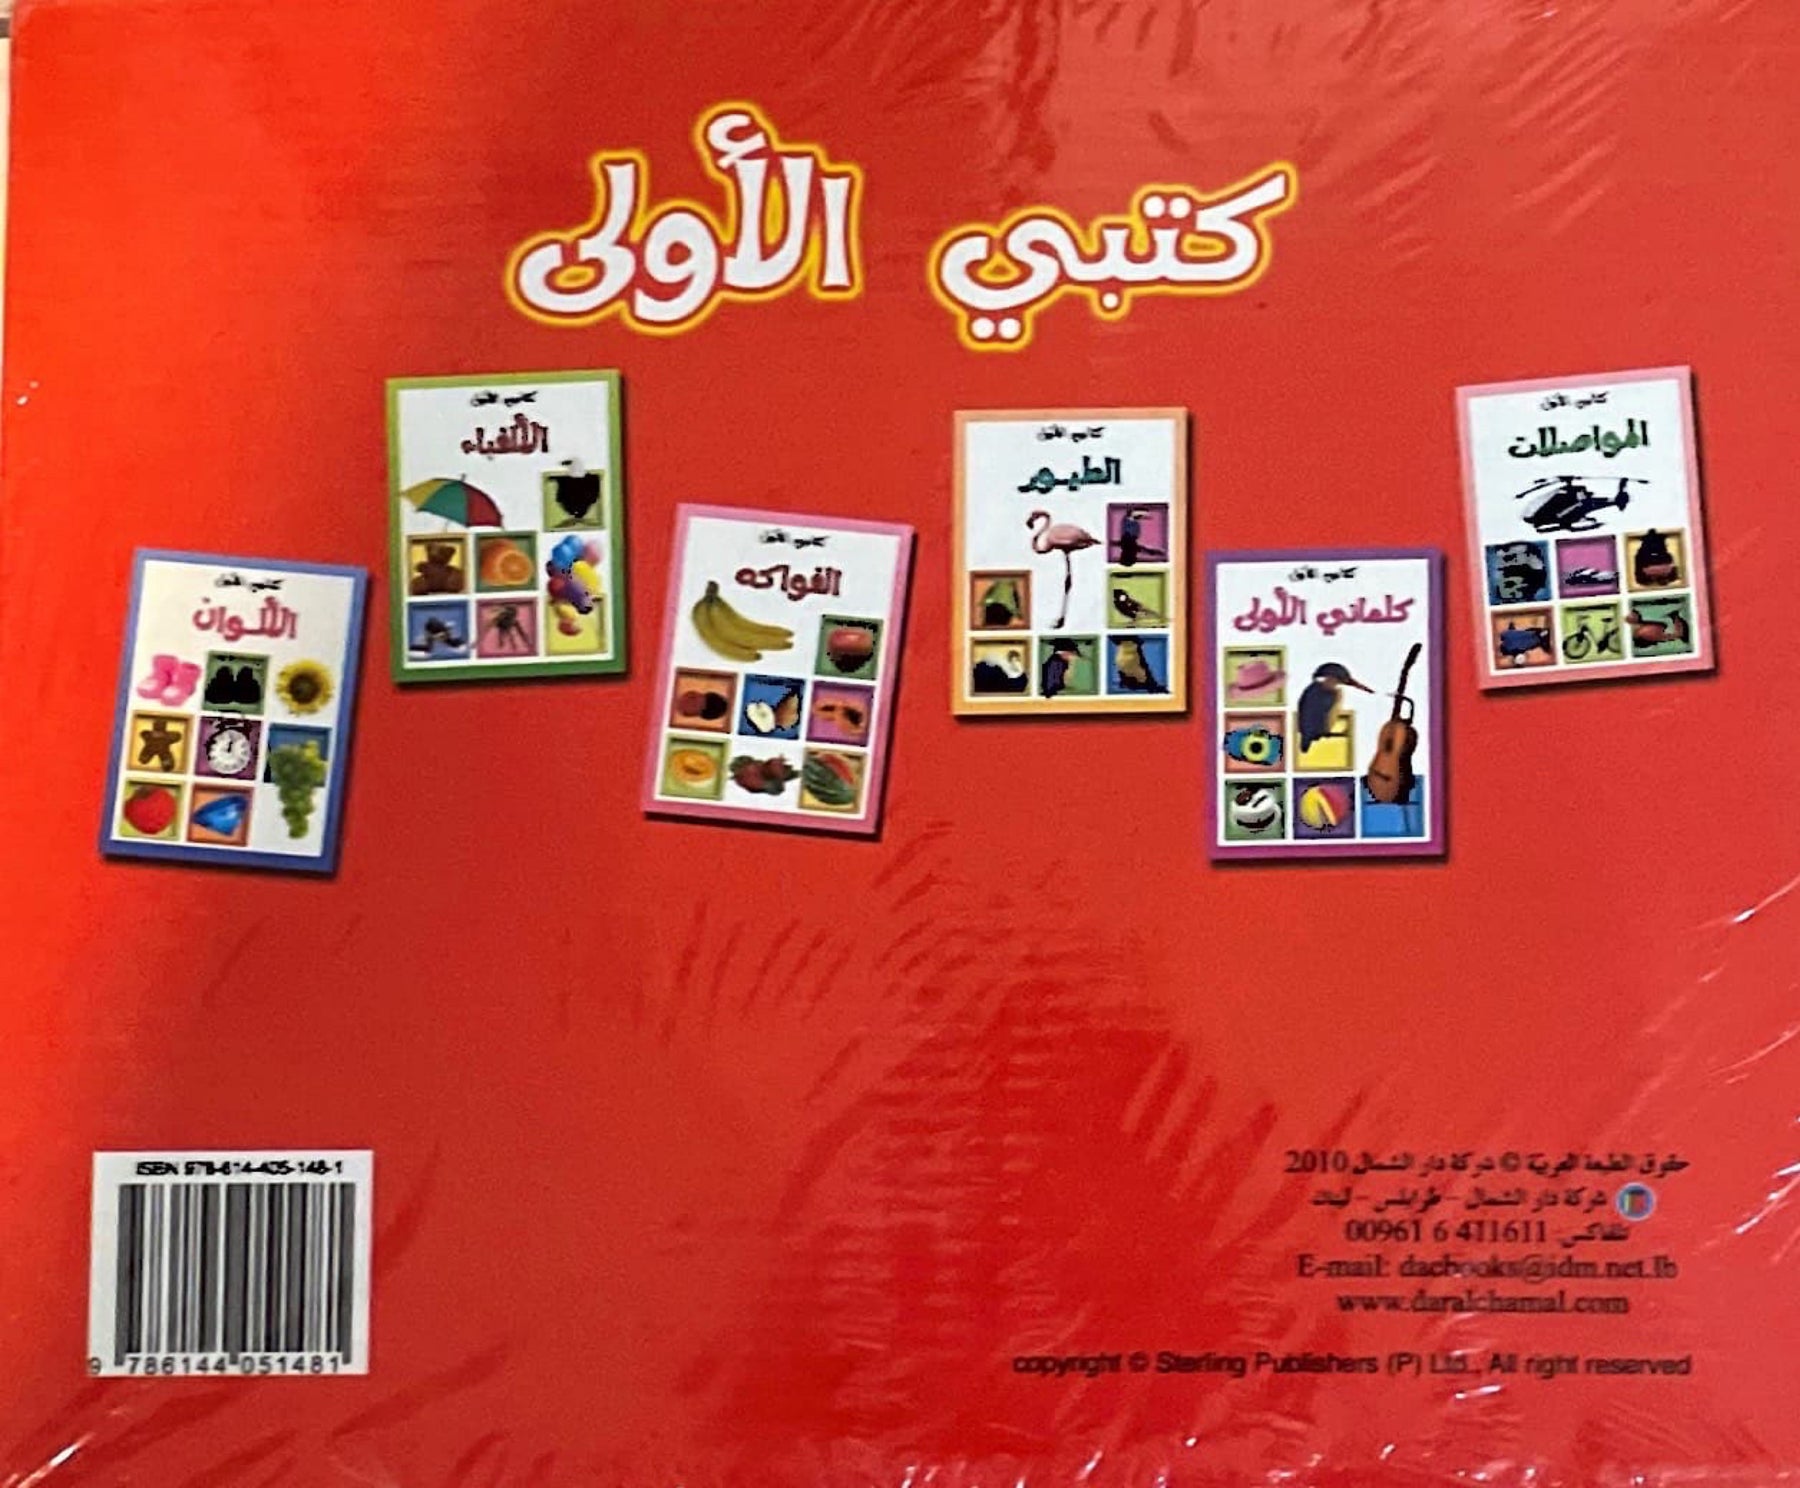 كتبي الاولى الألفباء بالعلبة : عربي انجليزي